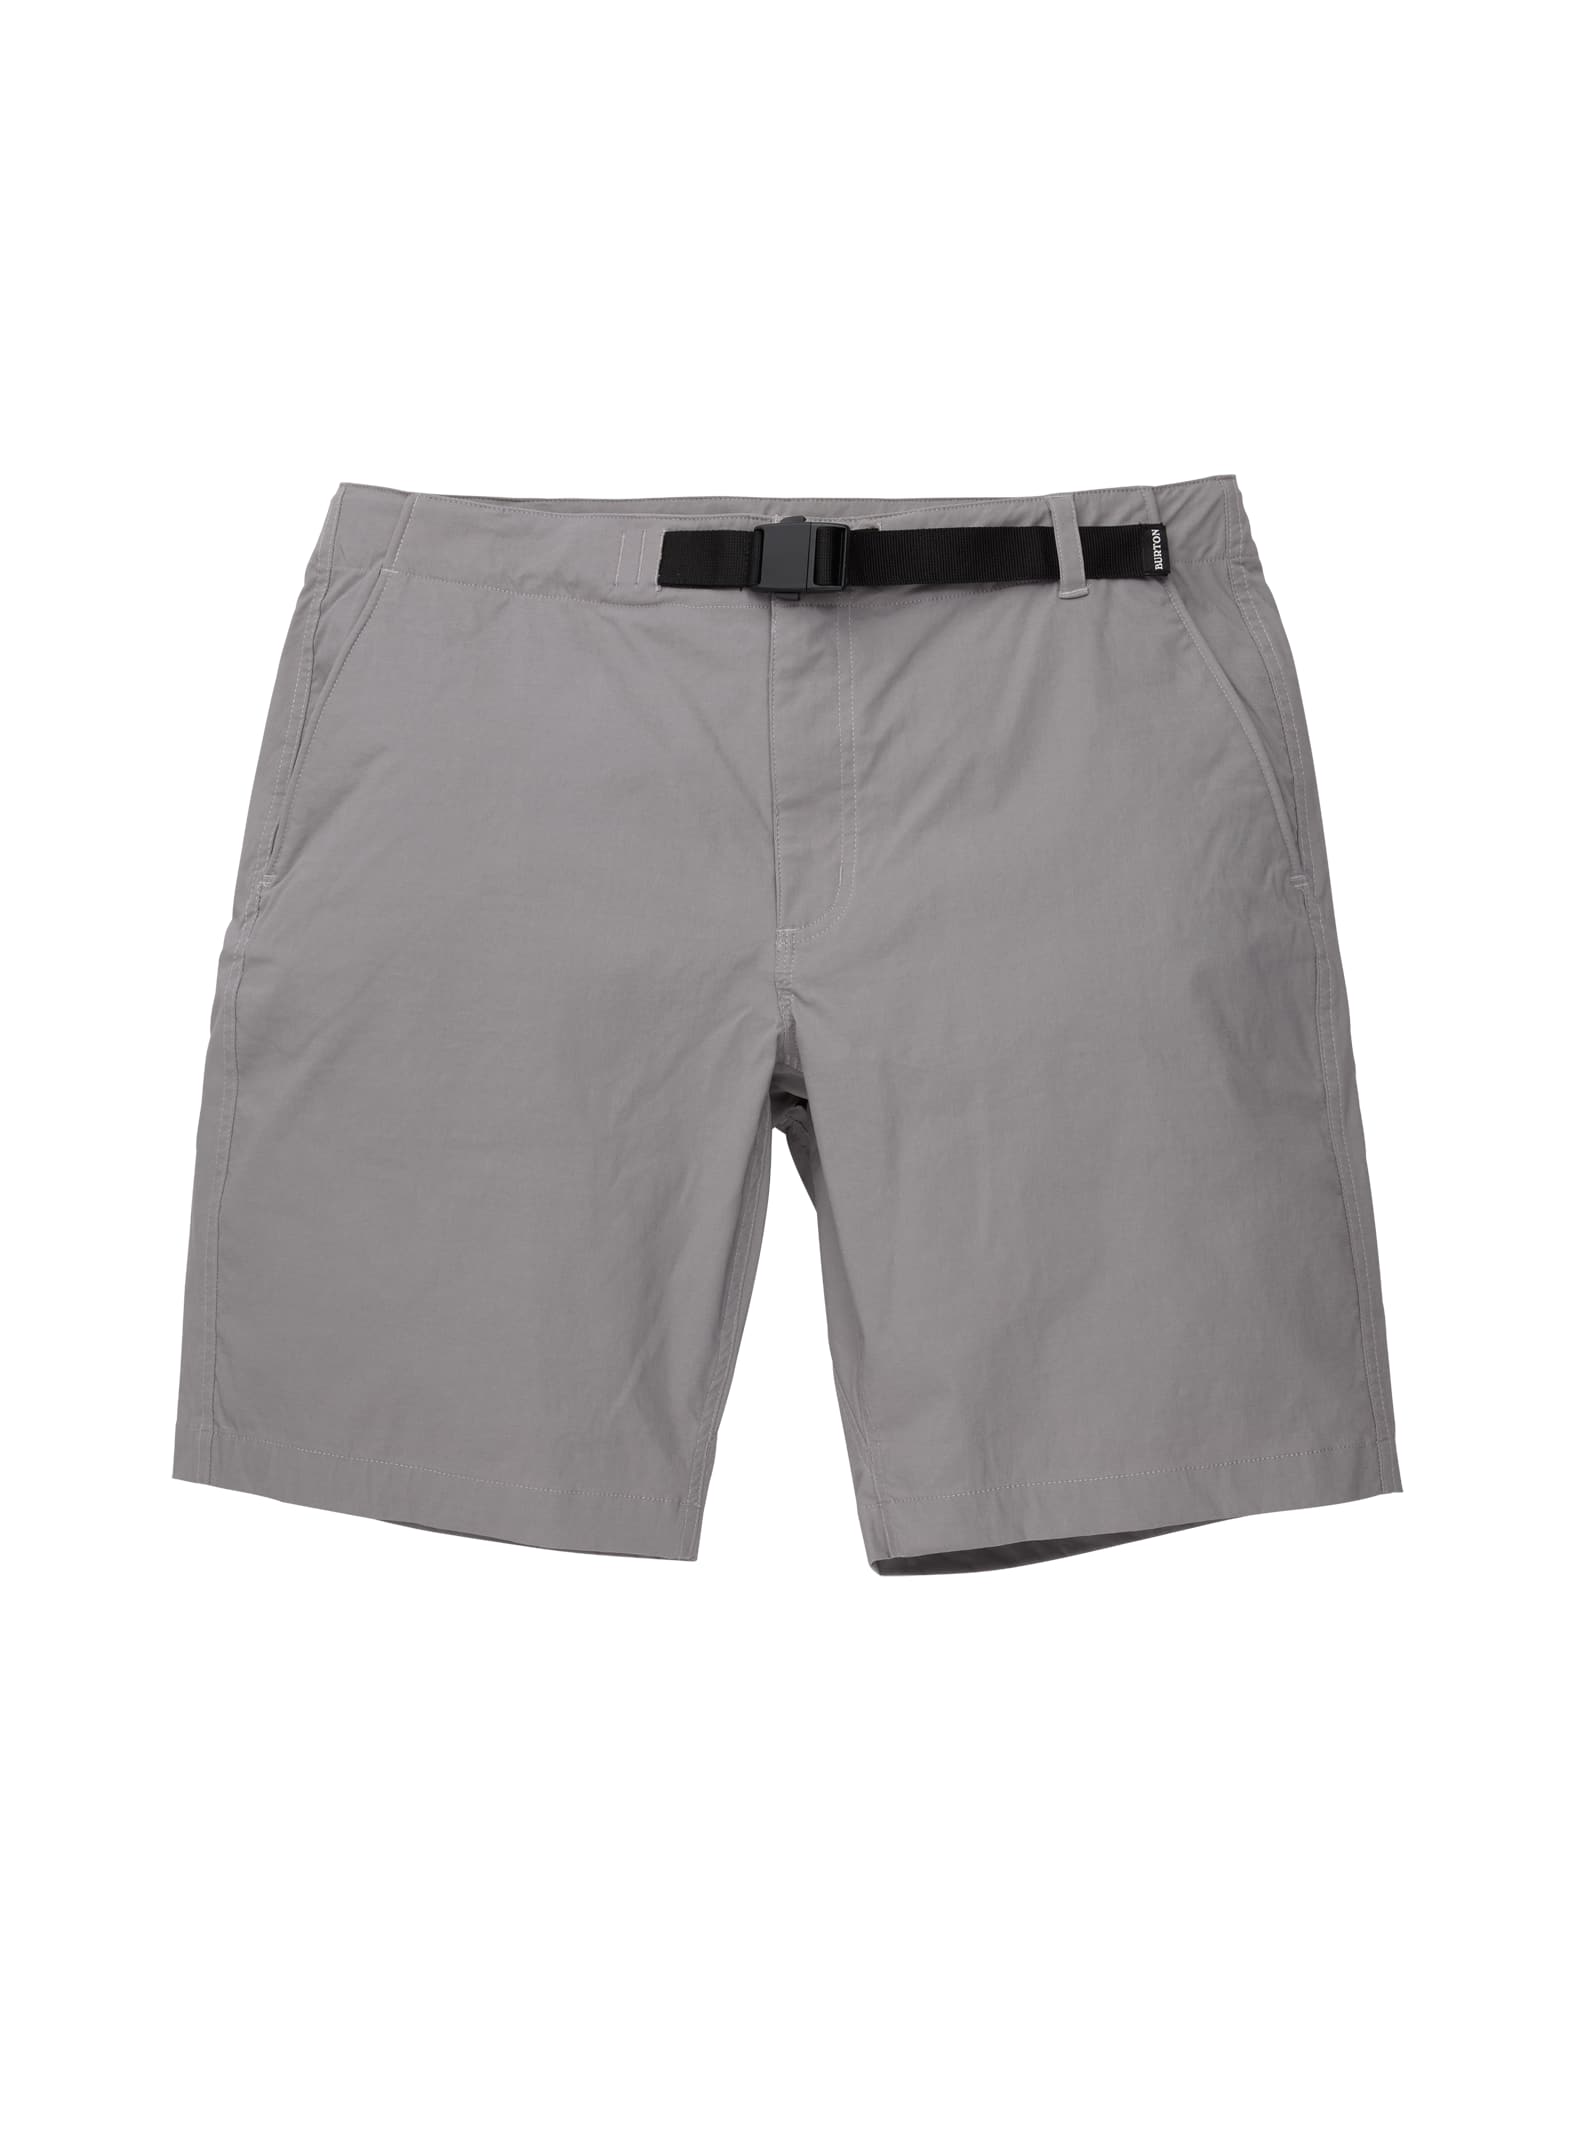 Men's Burton Ridge Shorts | Burton.com Spring 2021 IT